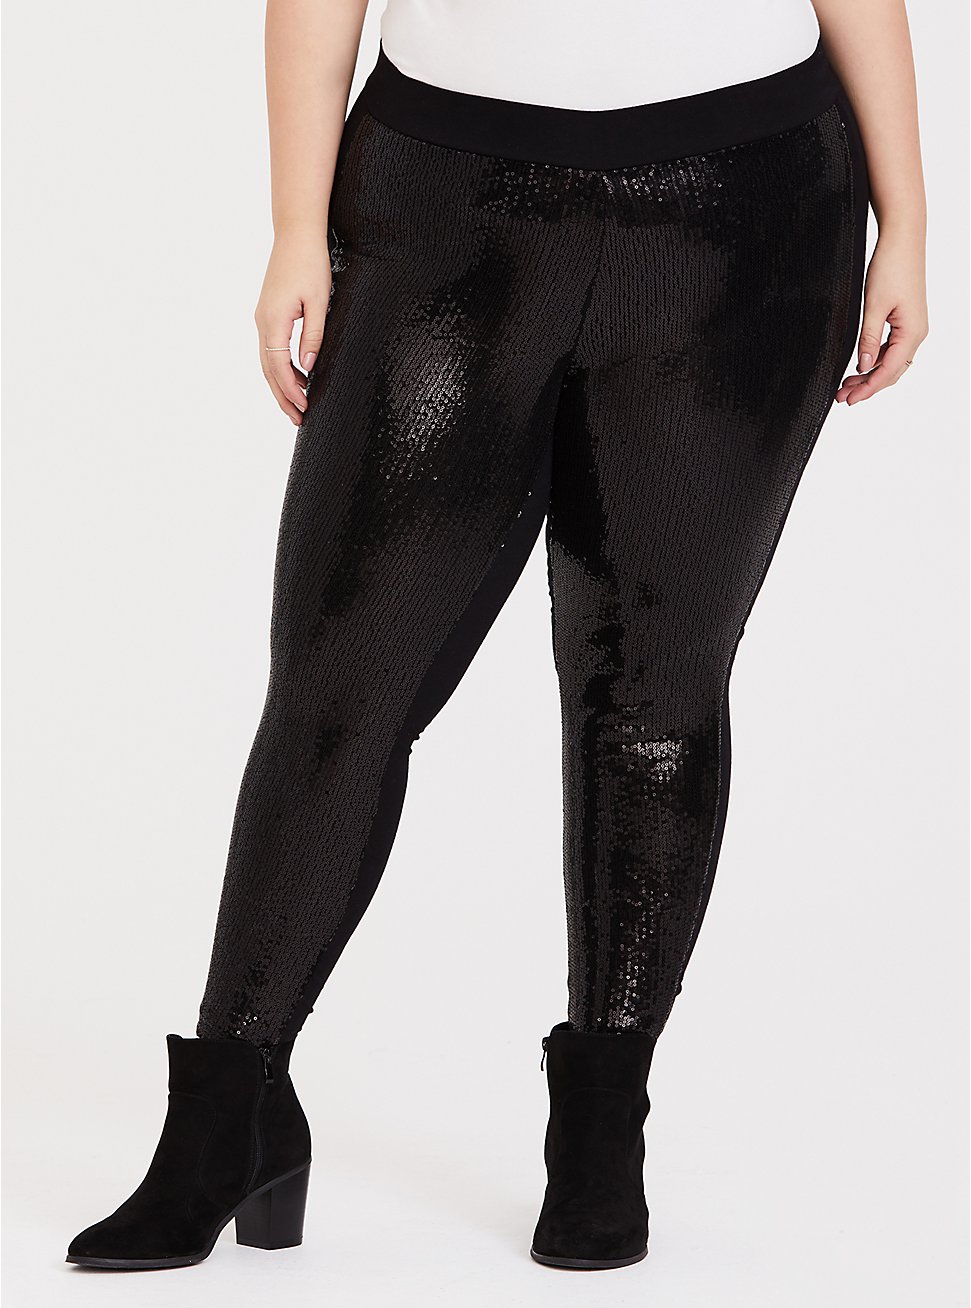 Plus Size Platinum Legging - Sequin Black, BLACK, hi-res